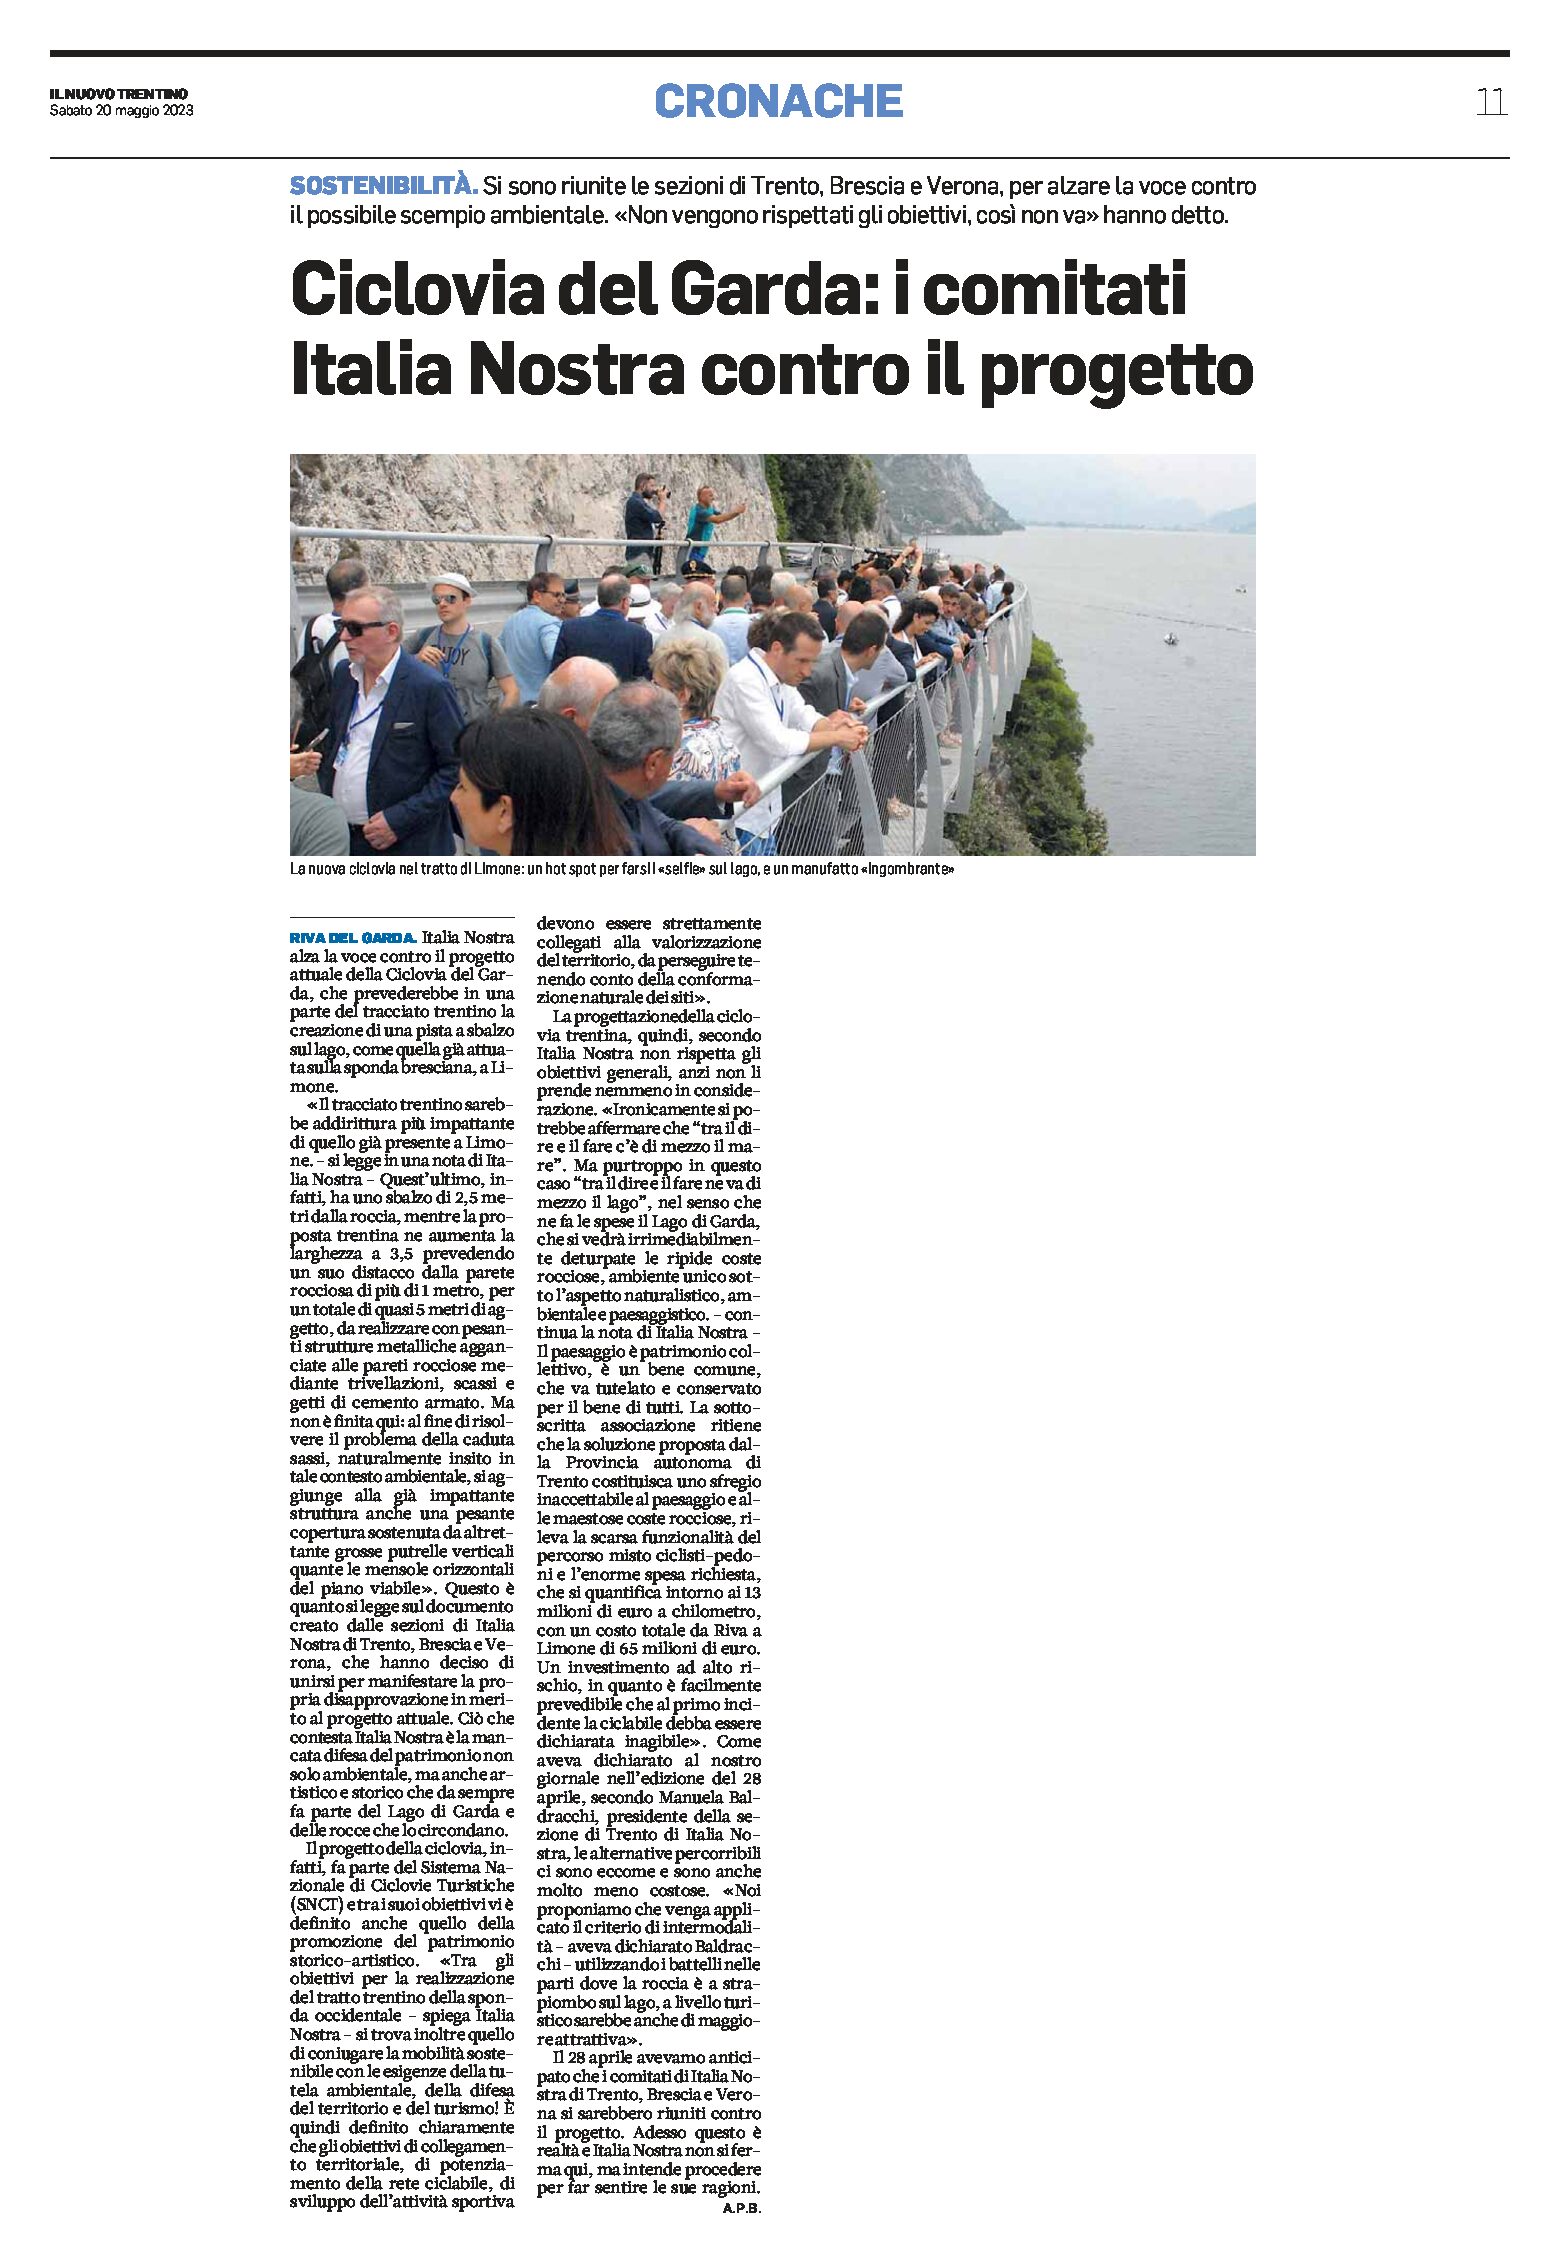 Ciclovia del Garda: i comitati di Italia Nostra (Trento, Brescia e Verona) contro il progetto